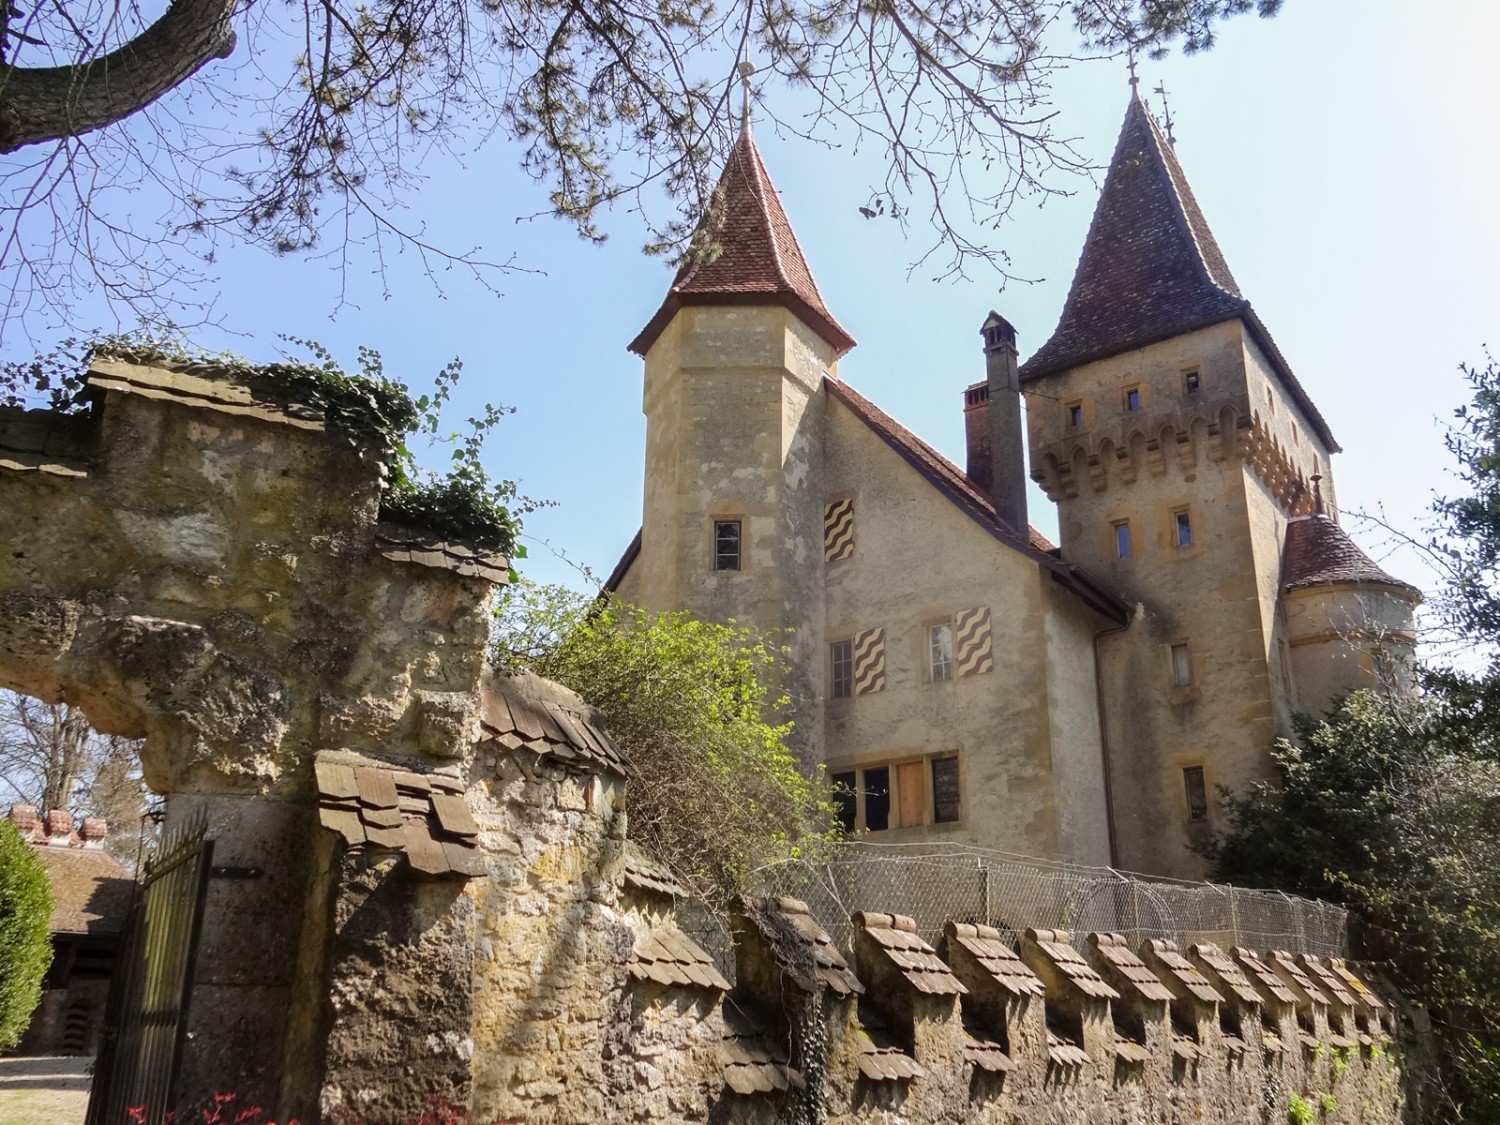 Das zauberhafte Schloss Jeanjaquet überrascht die Wandernden. Bild: Miroslaw Halaba